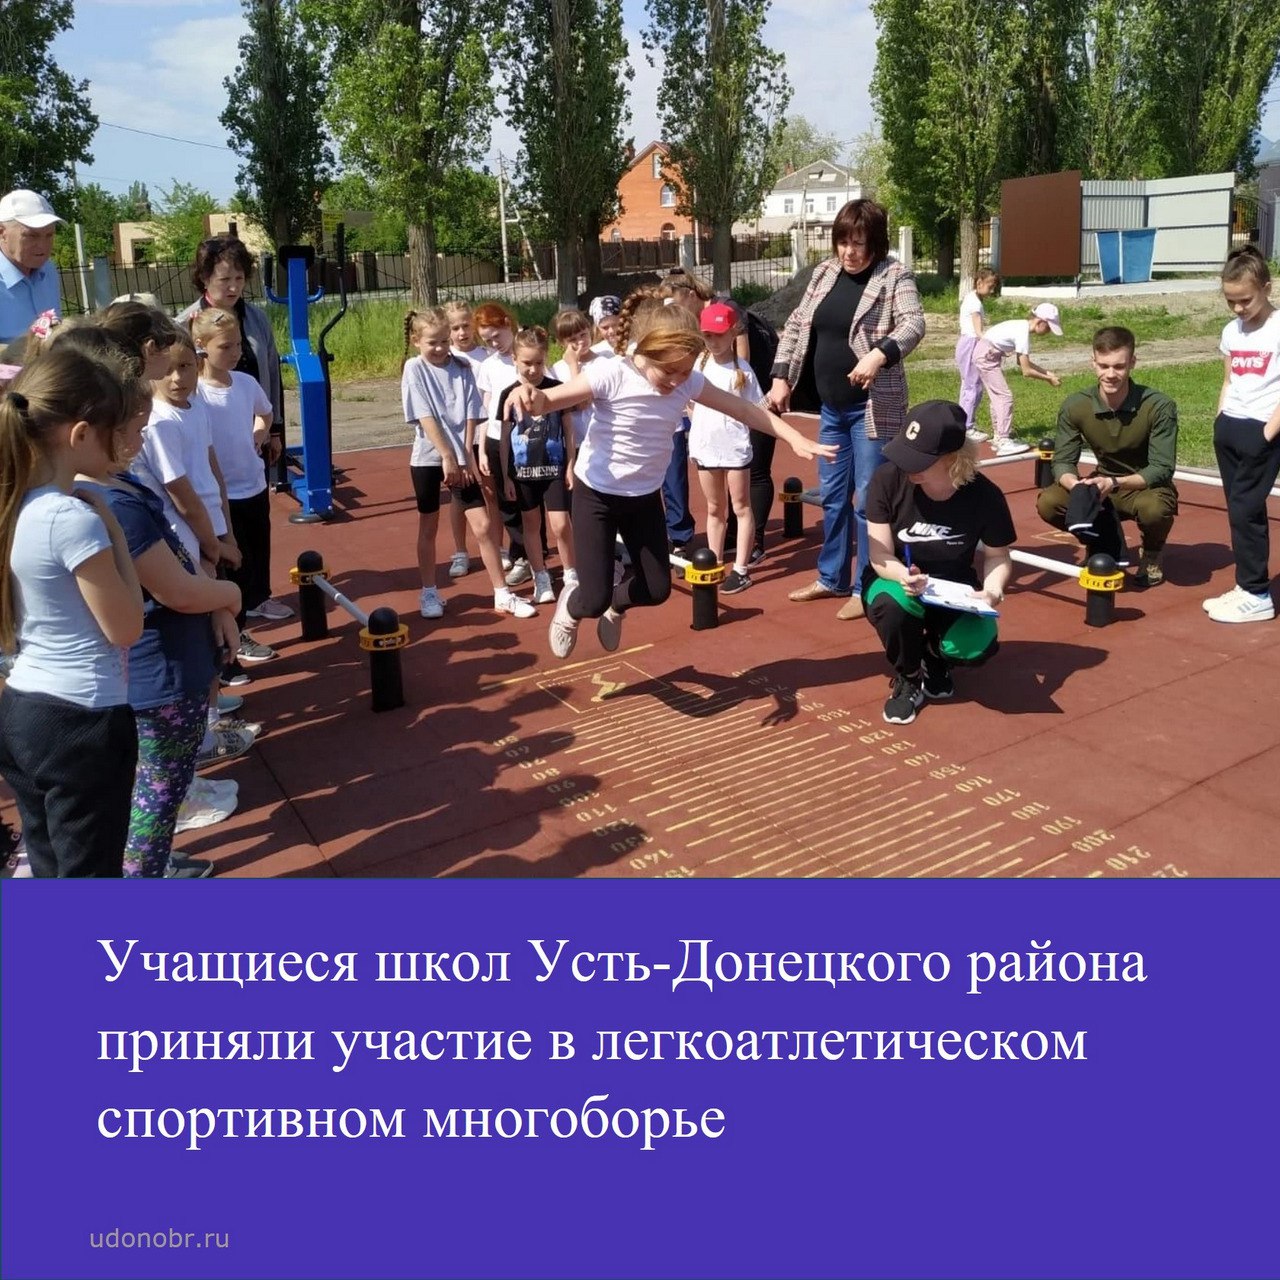 Учащиеся школ Усть-Донецкого района приняли участие в легкоатлетическом спортивном многоборье